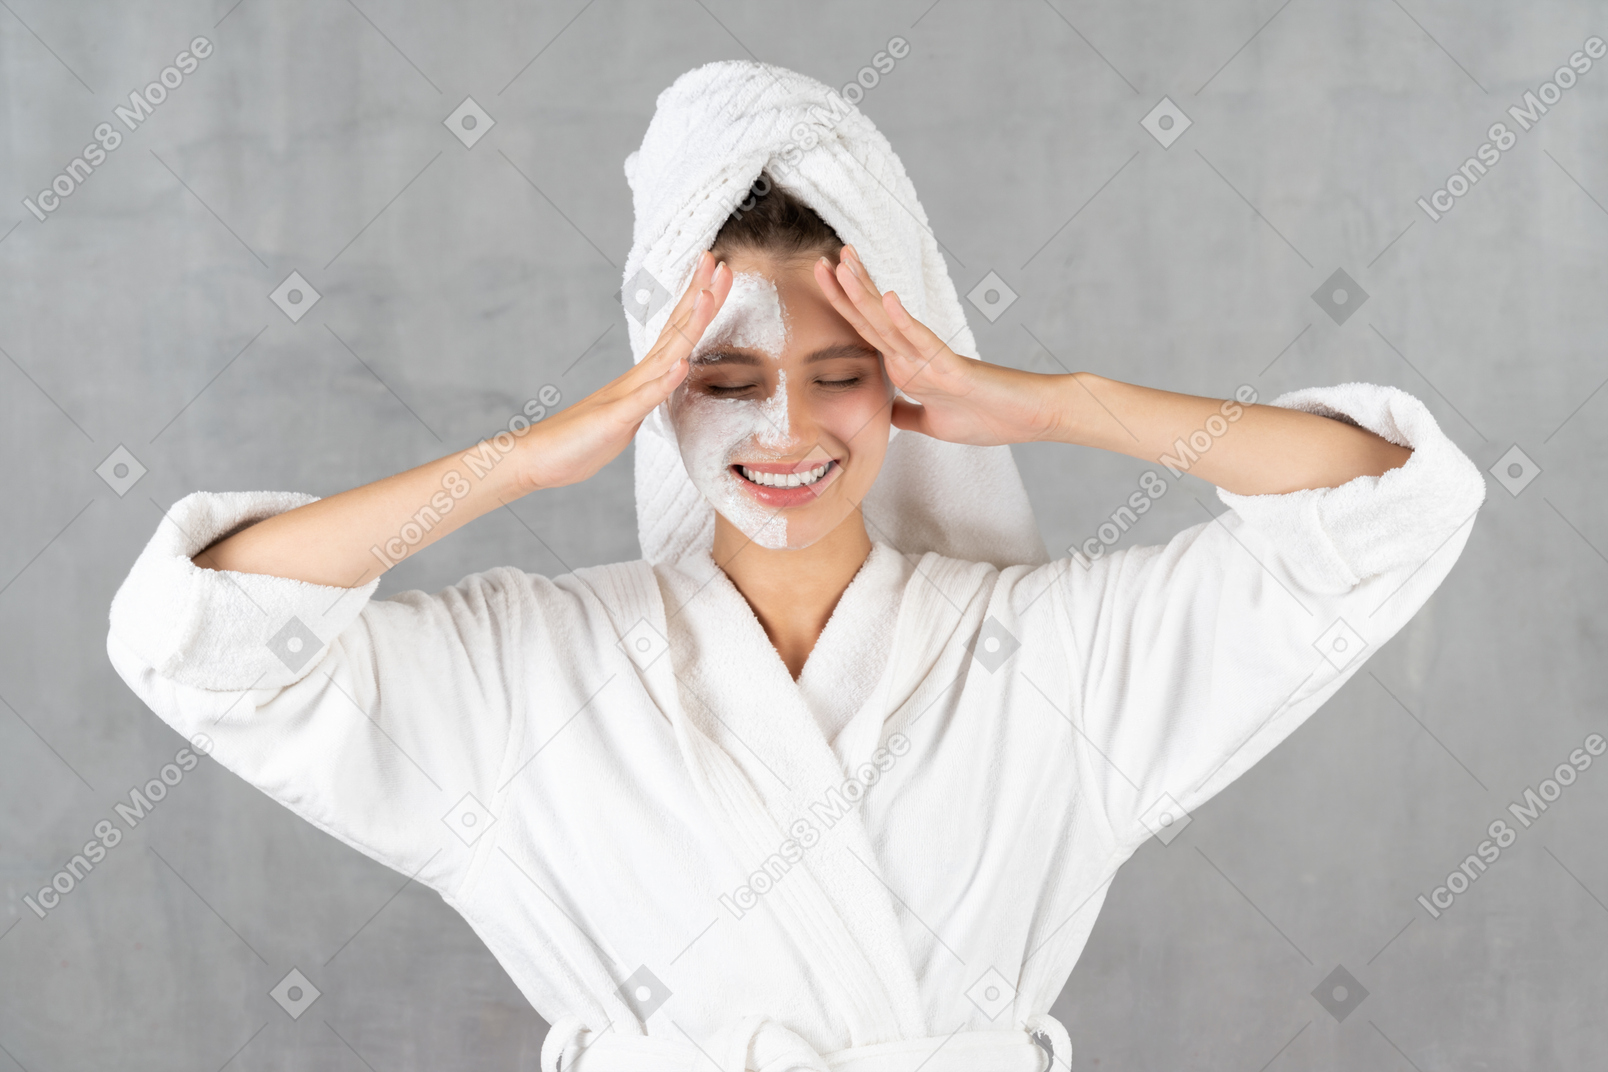 Frau im bademantel lächelt und berührt schläfen